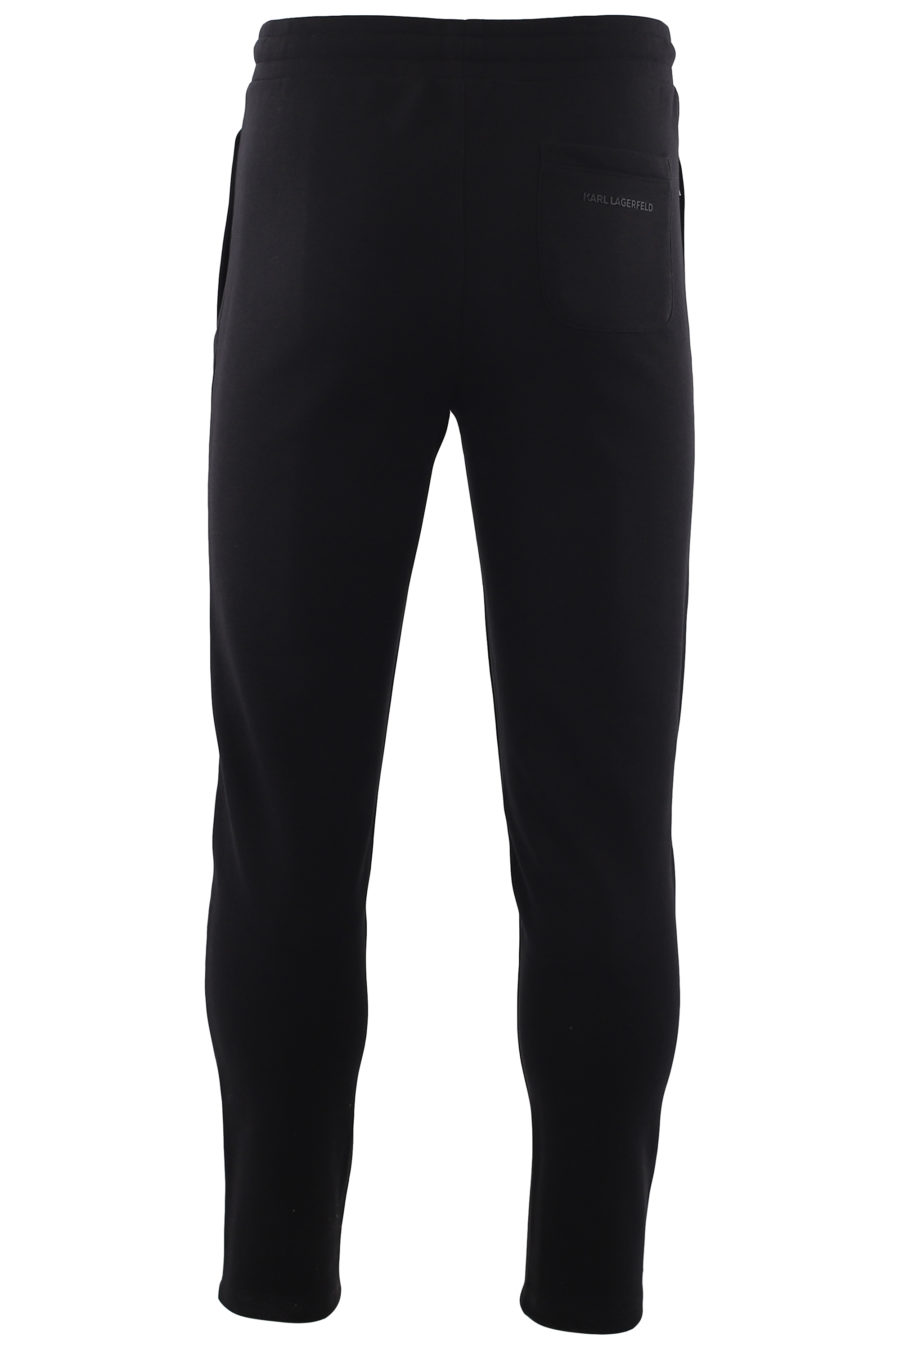 Pantalón chándal negro con logo plateado - IMG 6653